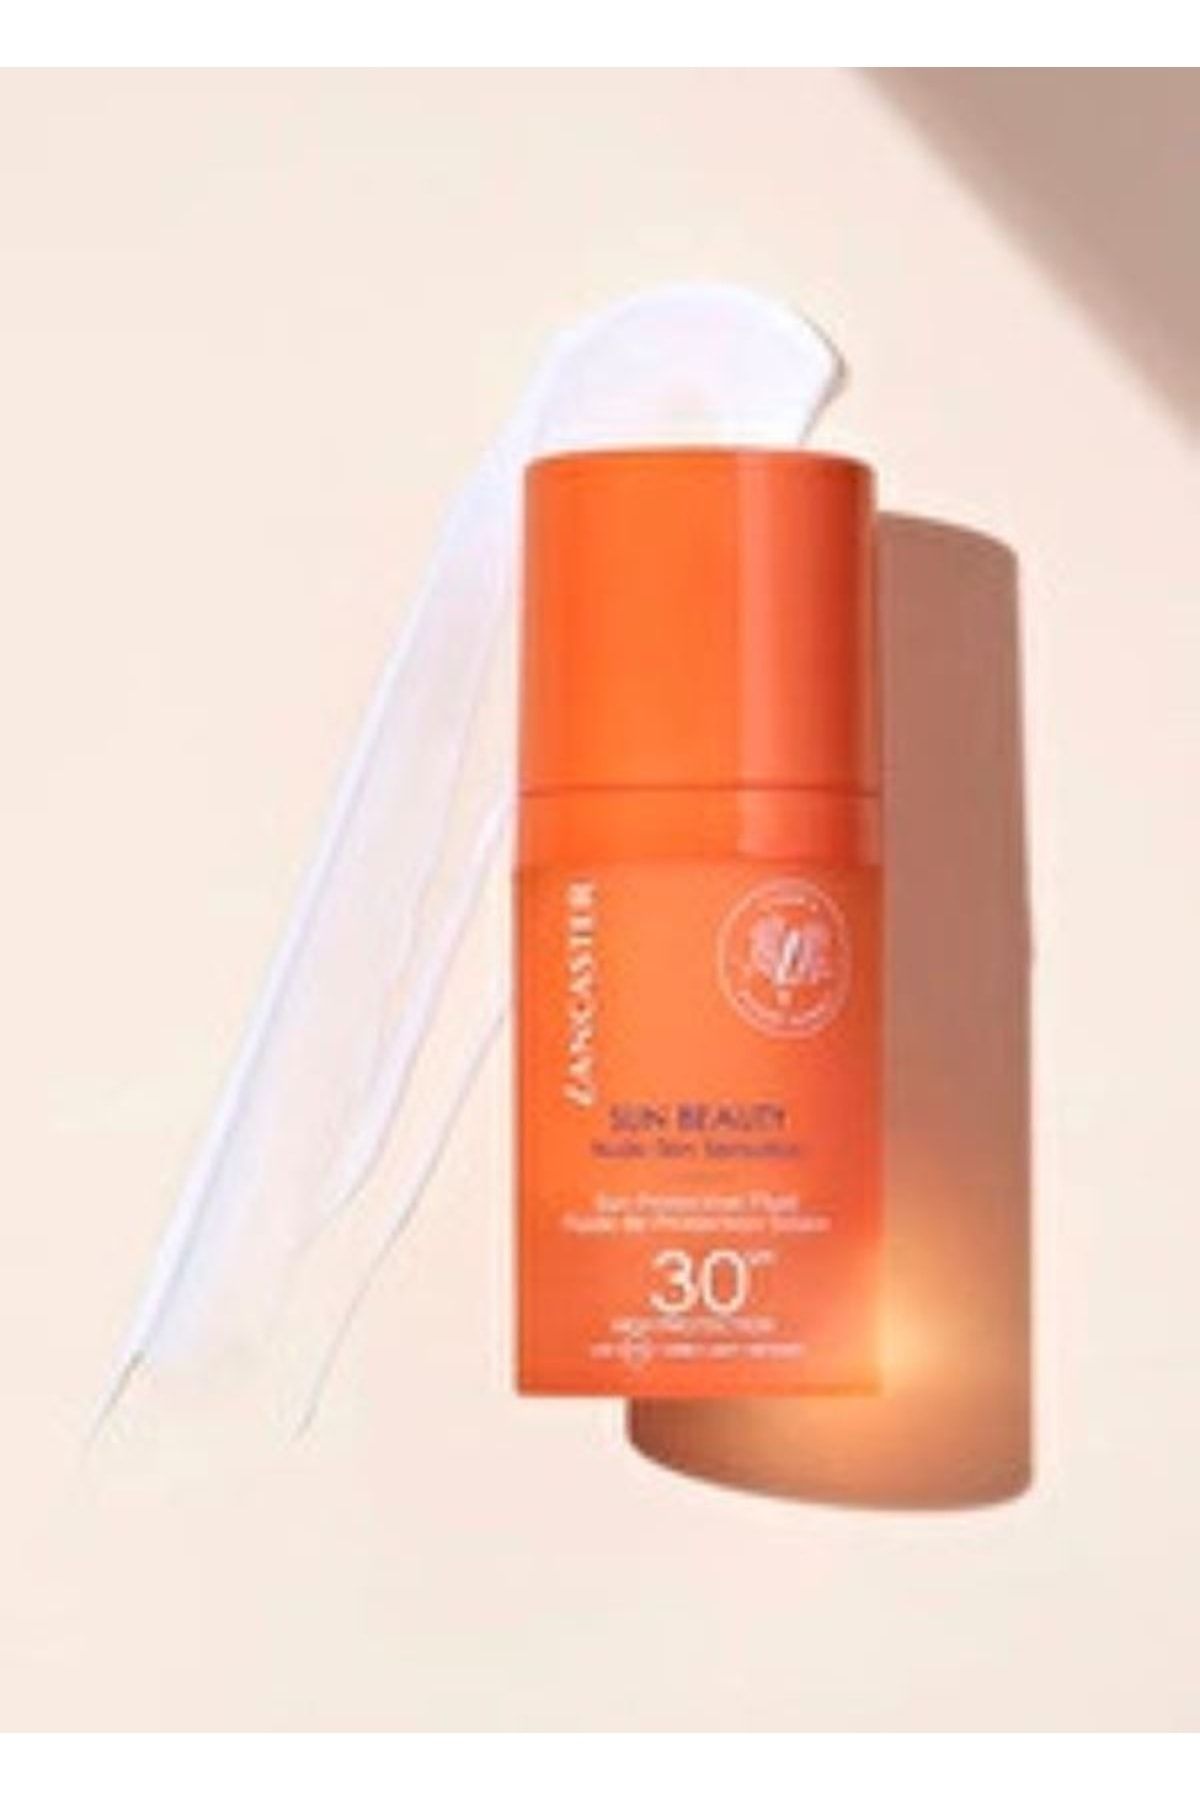 Lancaster Sun Beauty Nude Skin Sensation Vegan Güneş Koruyucu Spf 30- Onrness Cosmetıc